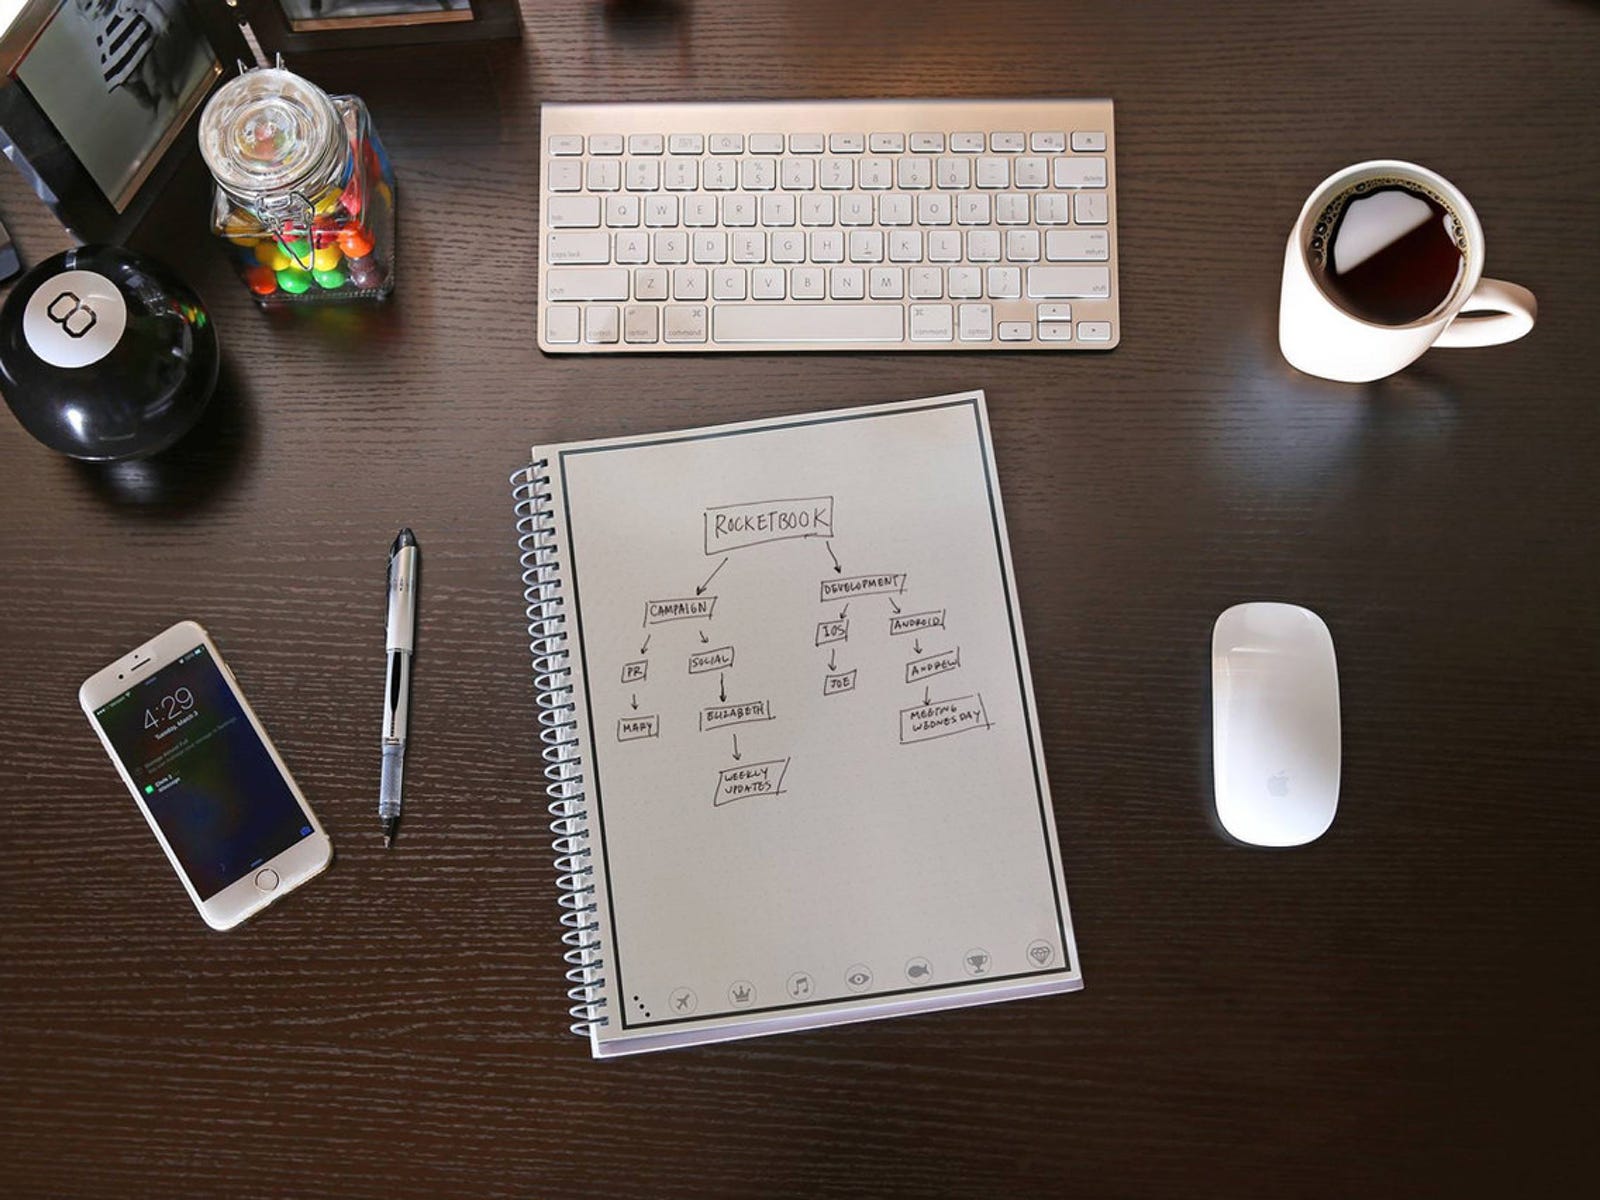 Bild eines Desktops mit Notizbuch, Tastatur, Kaffee, Maus, Telefon und Stift darauf